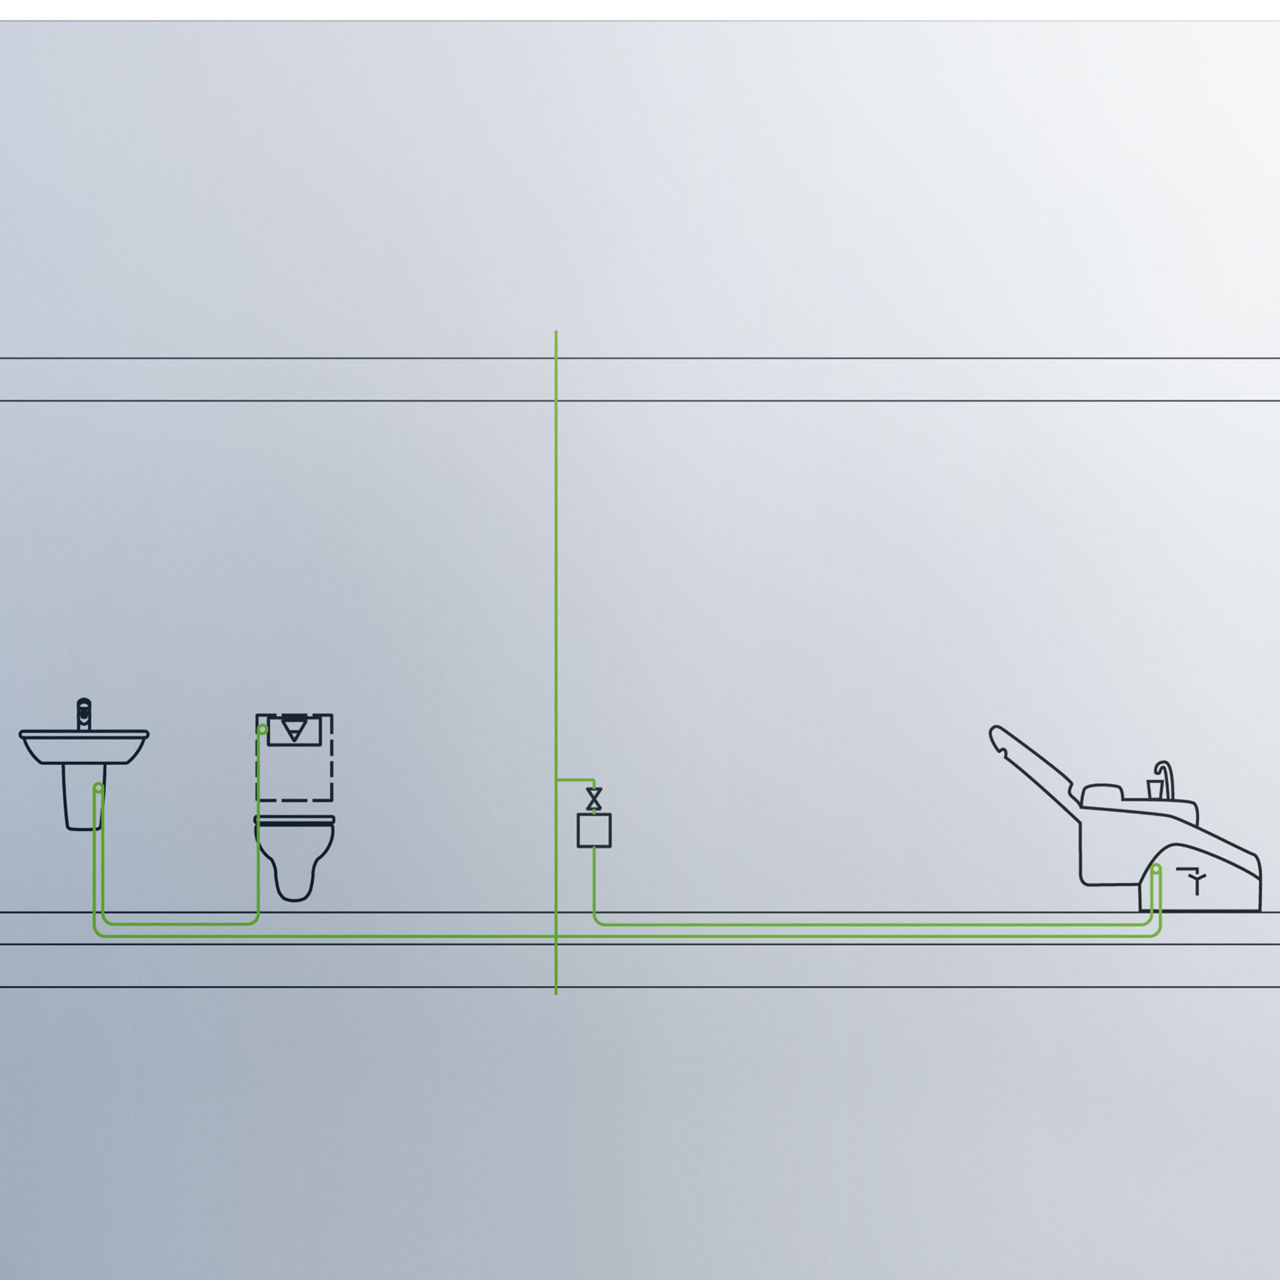 Drikkevandshygiejnen sikres ved installation af betjeningsplader med Viega Hygiejne+ skyllefunktion i slutningen af rørsystemet på hver etages. Ofte placeres toilettet ved det fjerneste tappested i rørsystemet.